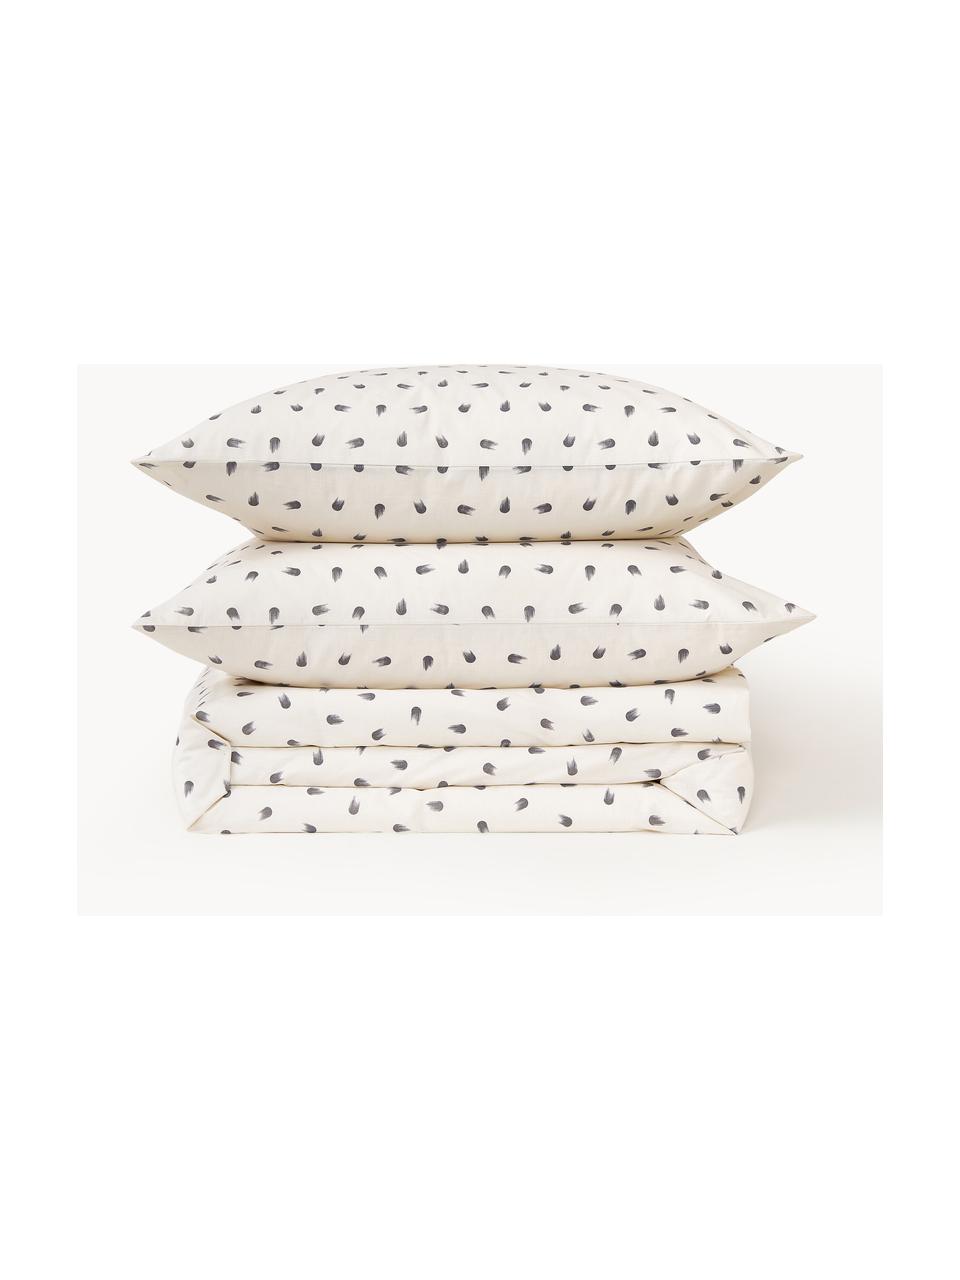 Baumwoll-Bettdeckenbezug Amma mit Tupfen-Muster, Webart: Renforcé Fadendichte 144 , Off White, B 200 x L 200 cm